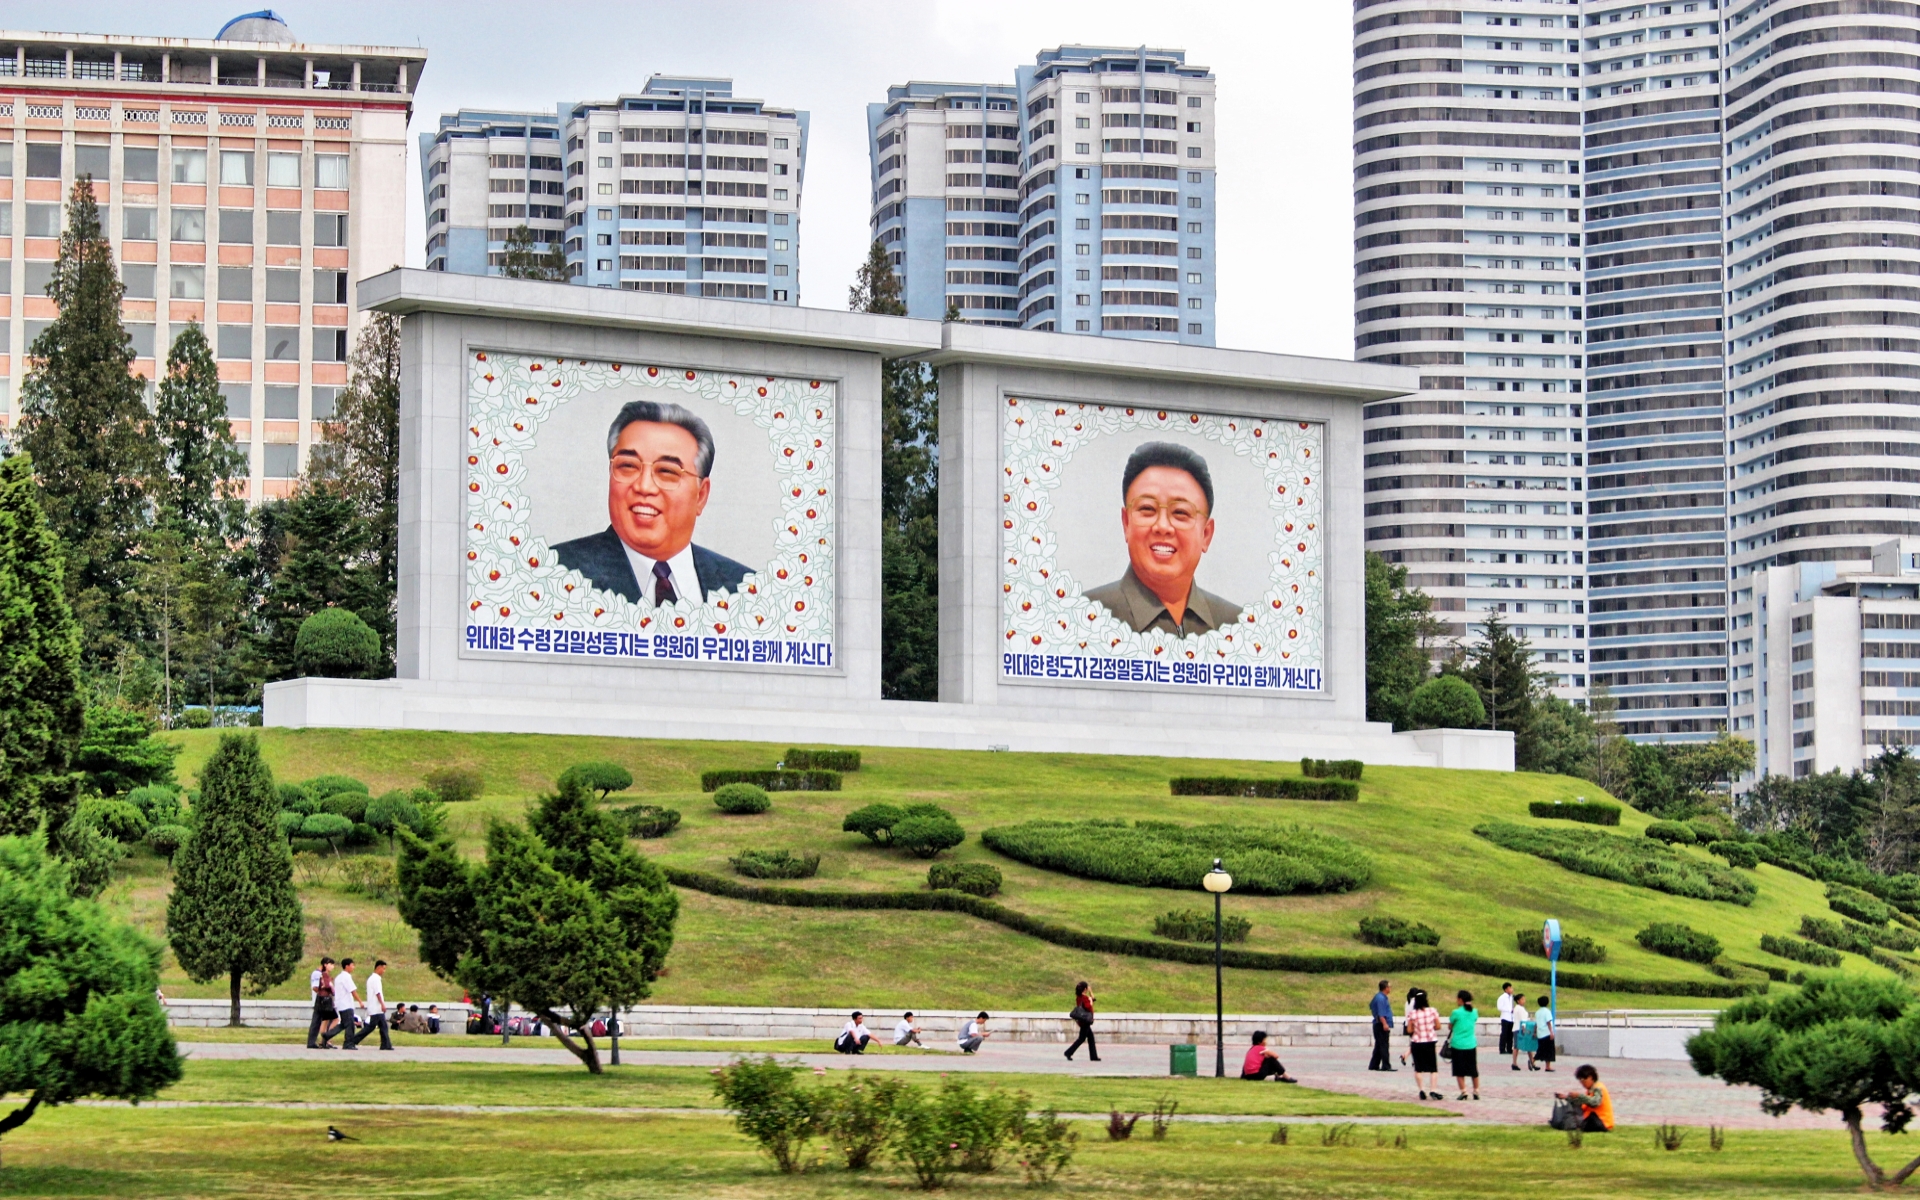 Скачать обои бесплатно Города, Сделано Человеком, Пхеньян картинка на рабочий стол ПК